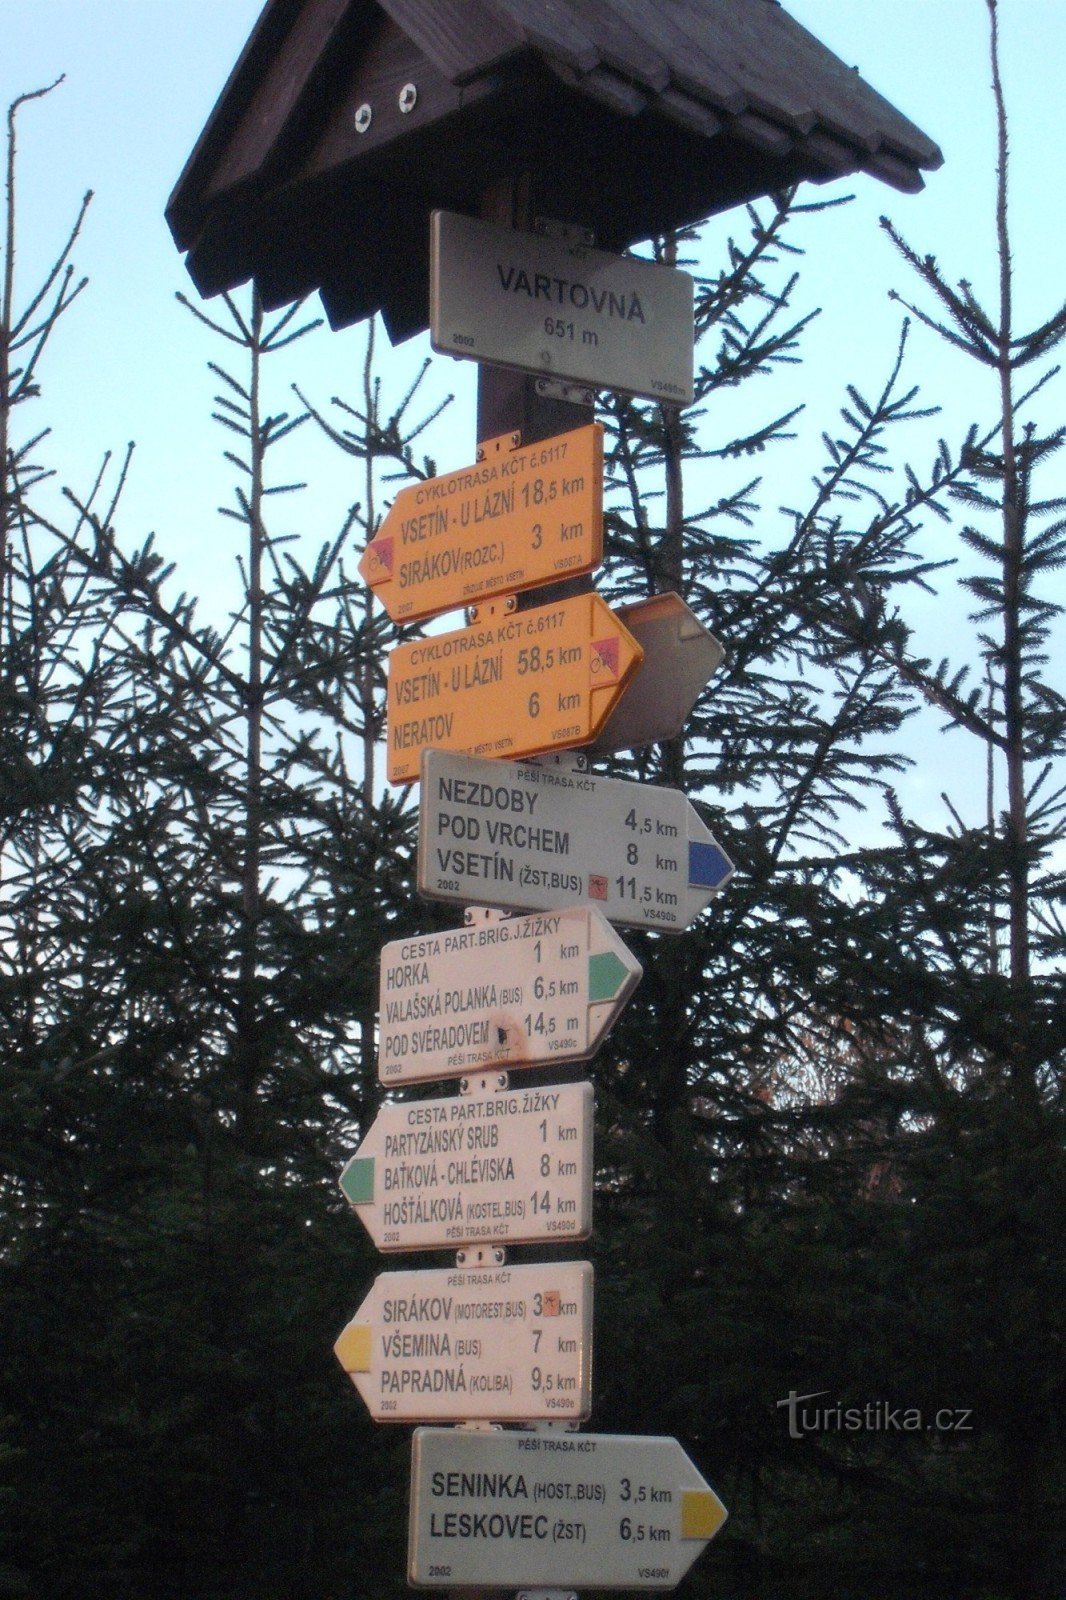 Placa de sinalização de Vartovna